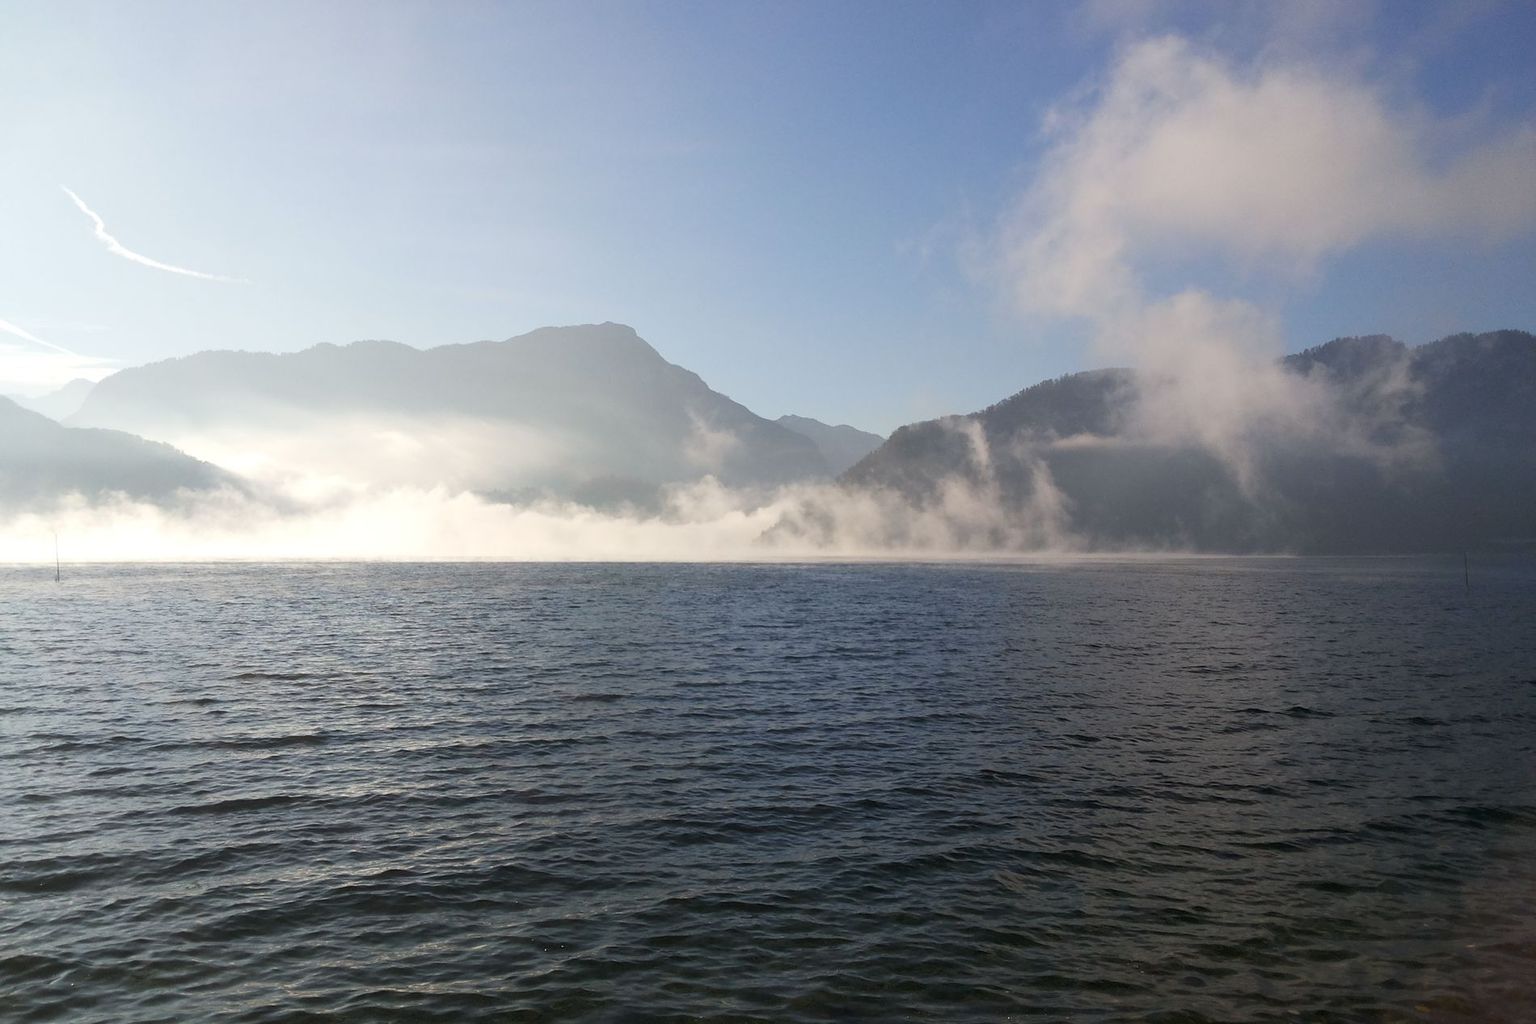 Nebel über dem Vierwaldstättersee: Damit sich der Nebel über der Schweizer Wasserzukunft lichten kann, muss die Datenlage zu Wassernutzung und Schadstoffen deutlich verbessert werden.